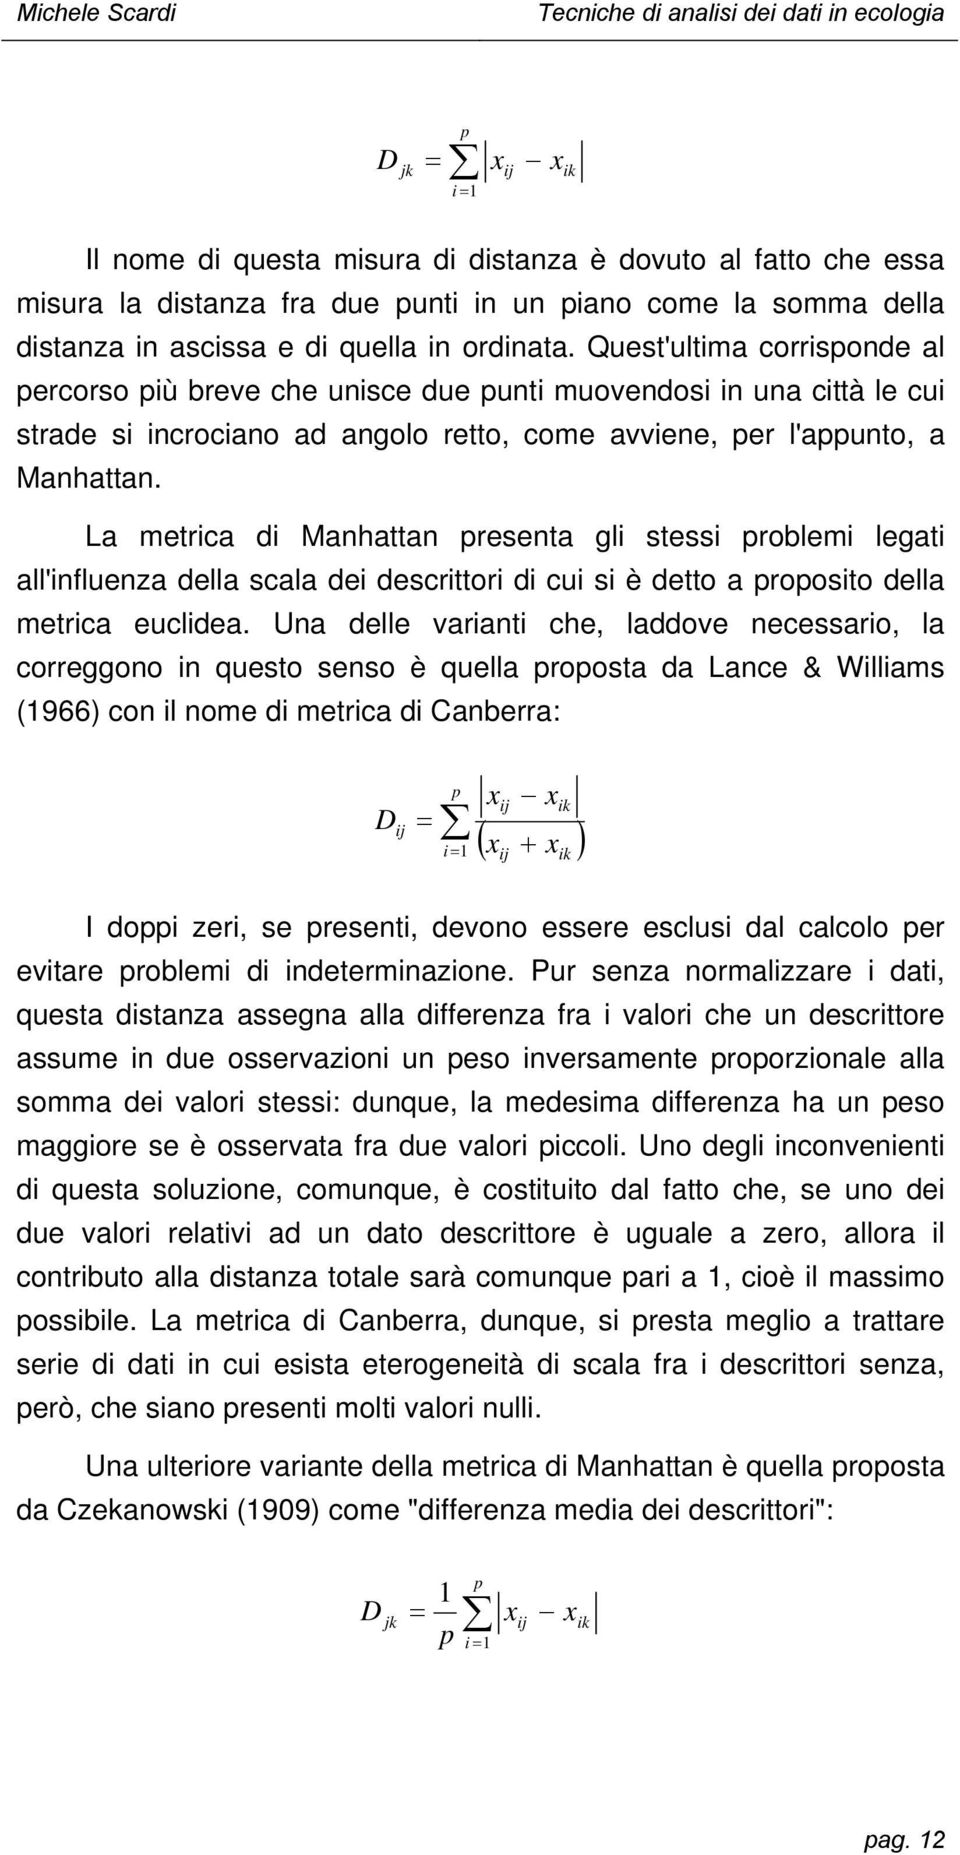 La metrica di Mahatta preseta gli stessi problemi legati all'iflueza della scala dei descrittori di cui si è detto a proposito della metrica euclidea.